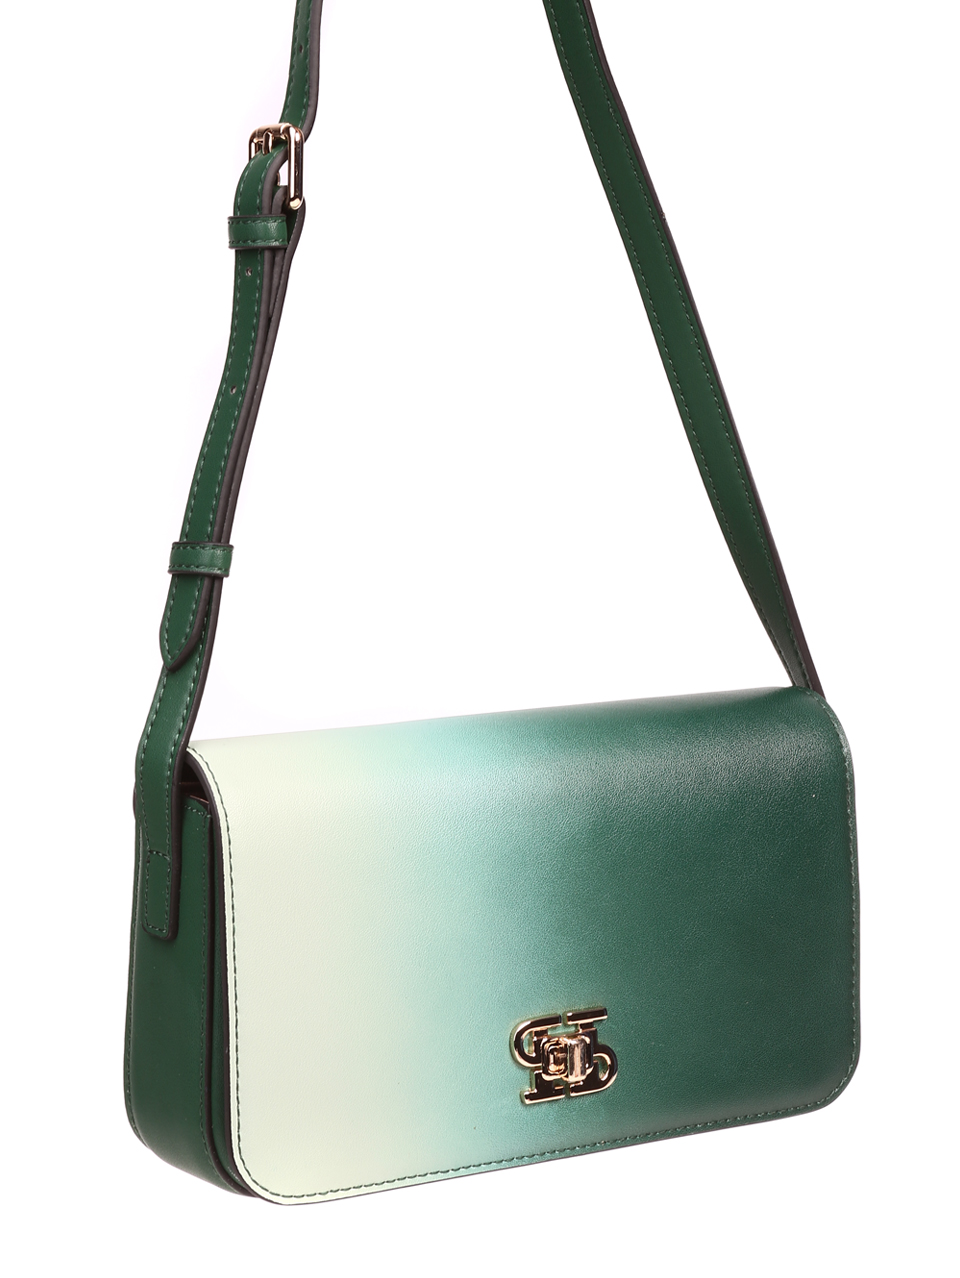 Елегантна дамска чанта в зелено от естествена кожа P20989 green